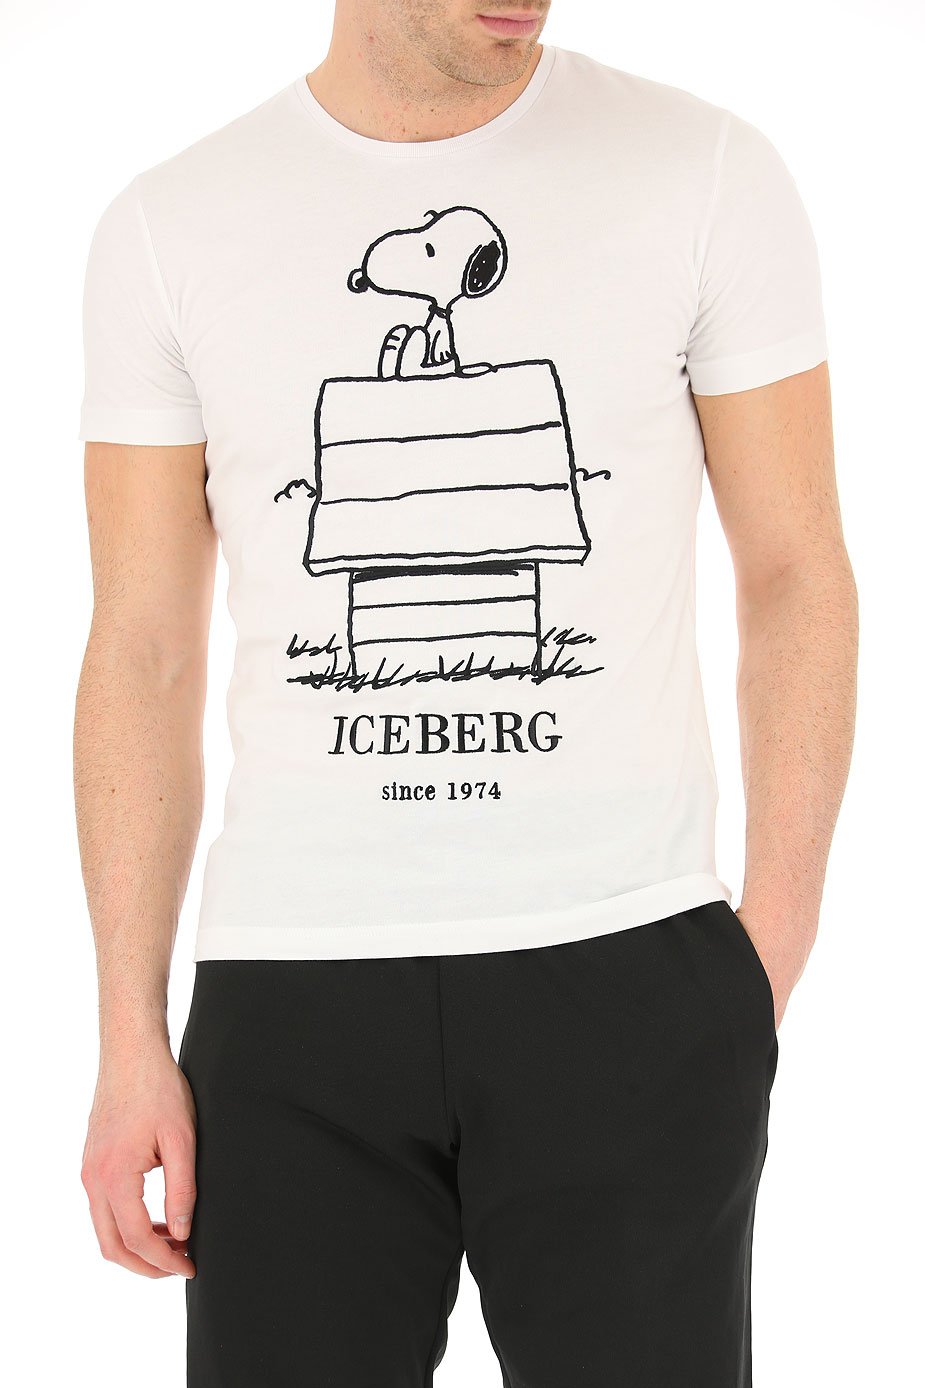 who owns iceberg clothing